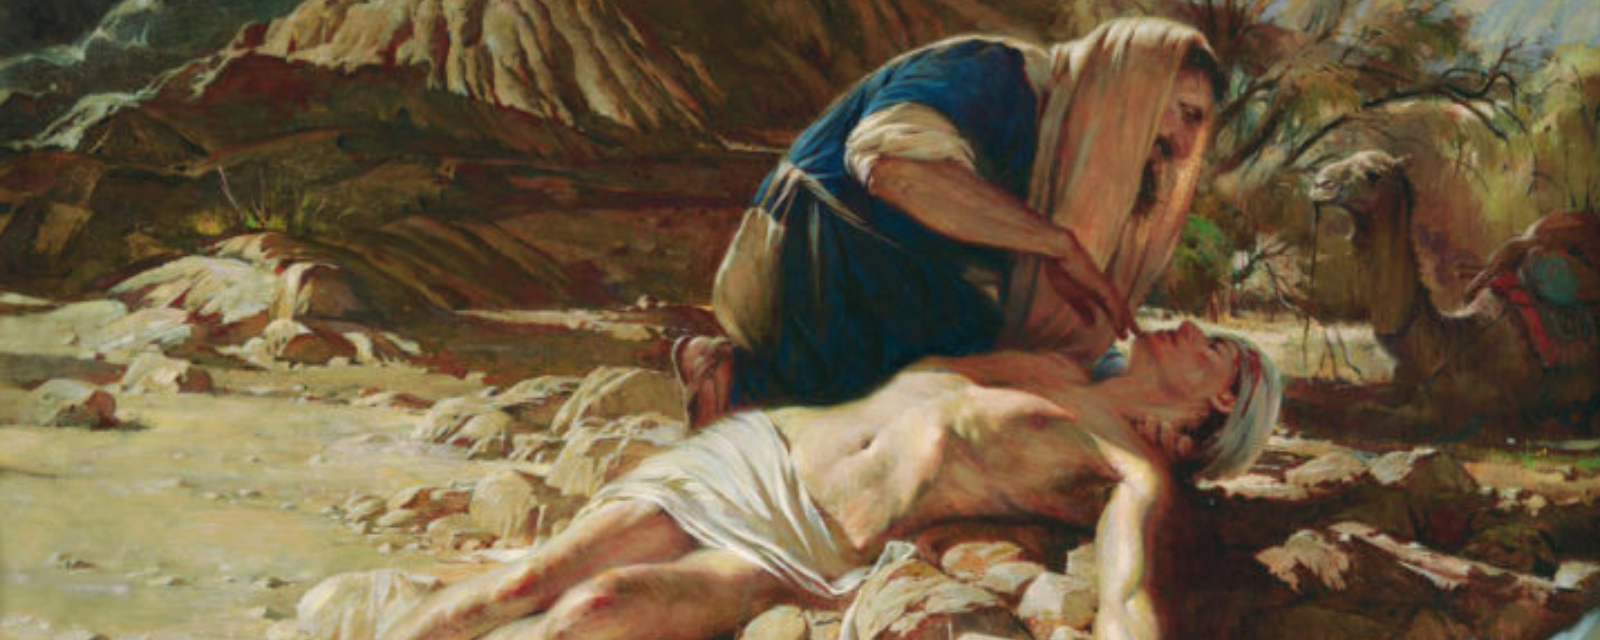 Um homem segura outro em seus braços, simbolizando a Parábola do Bom Samaritano.